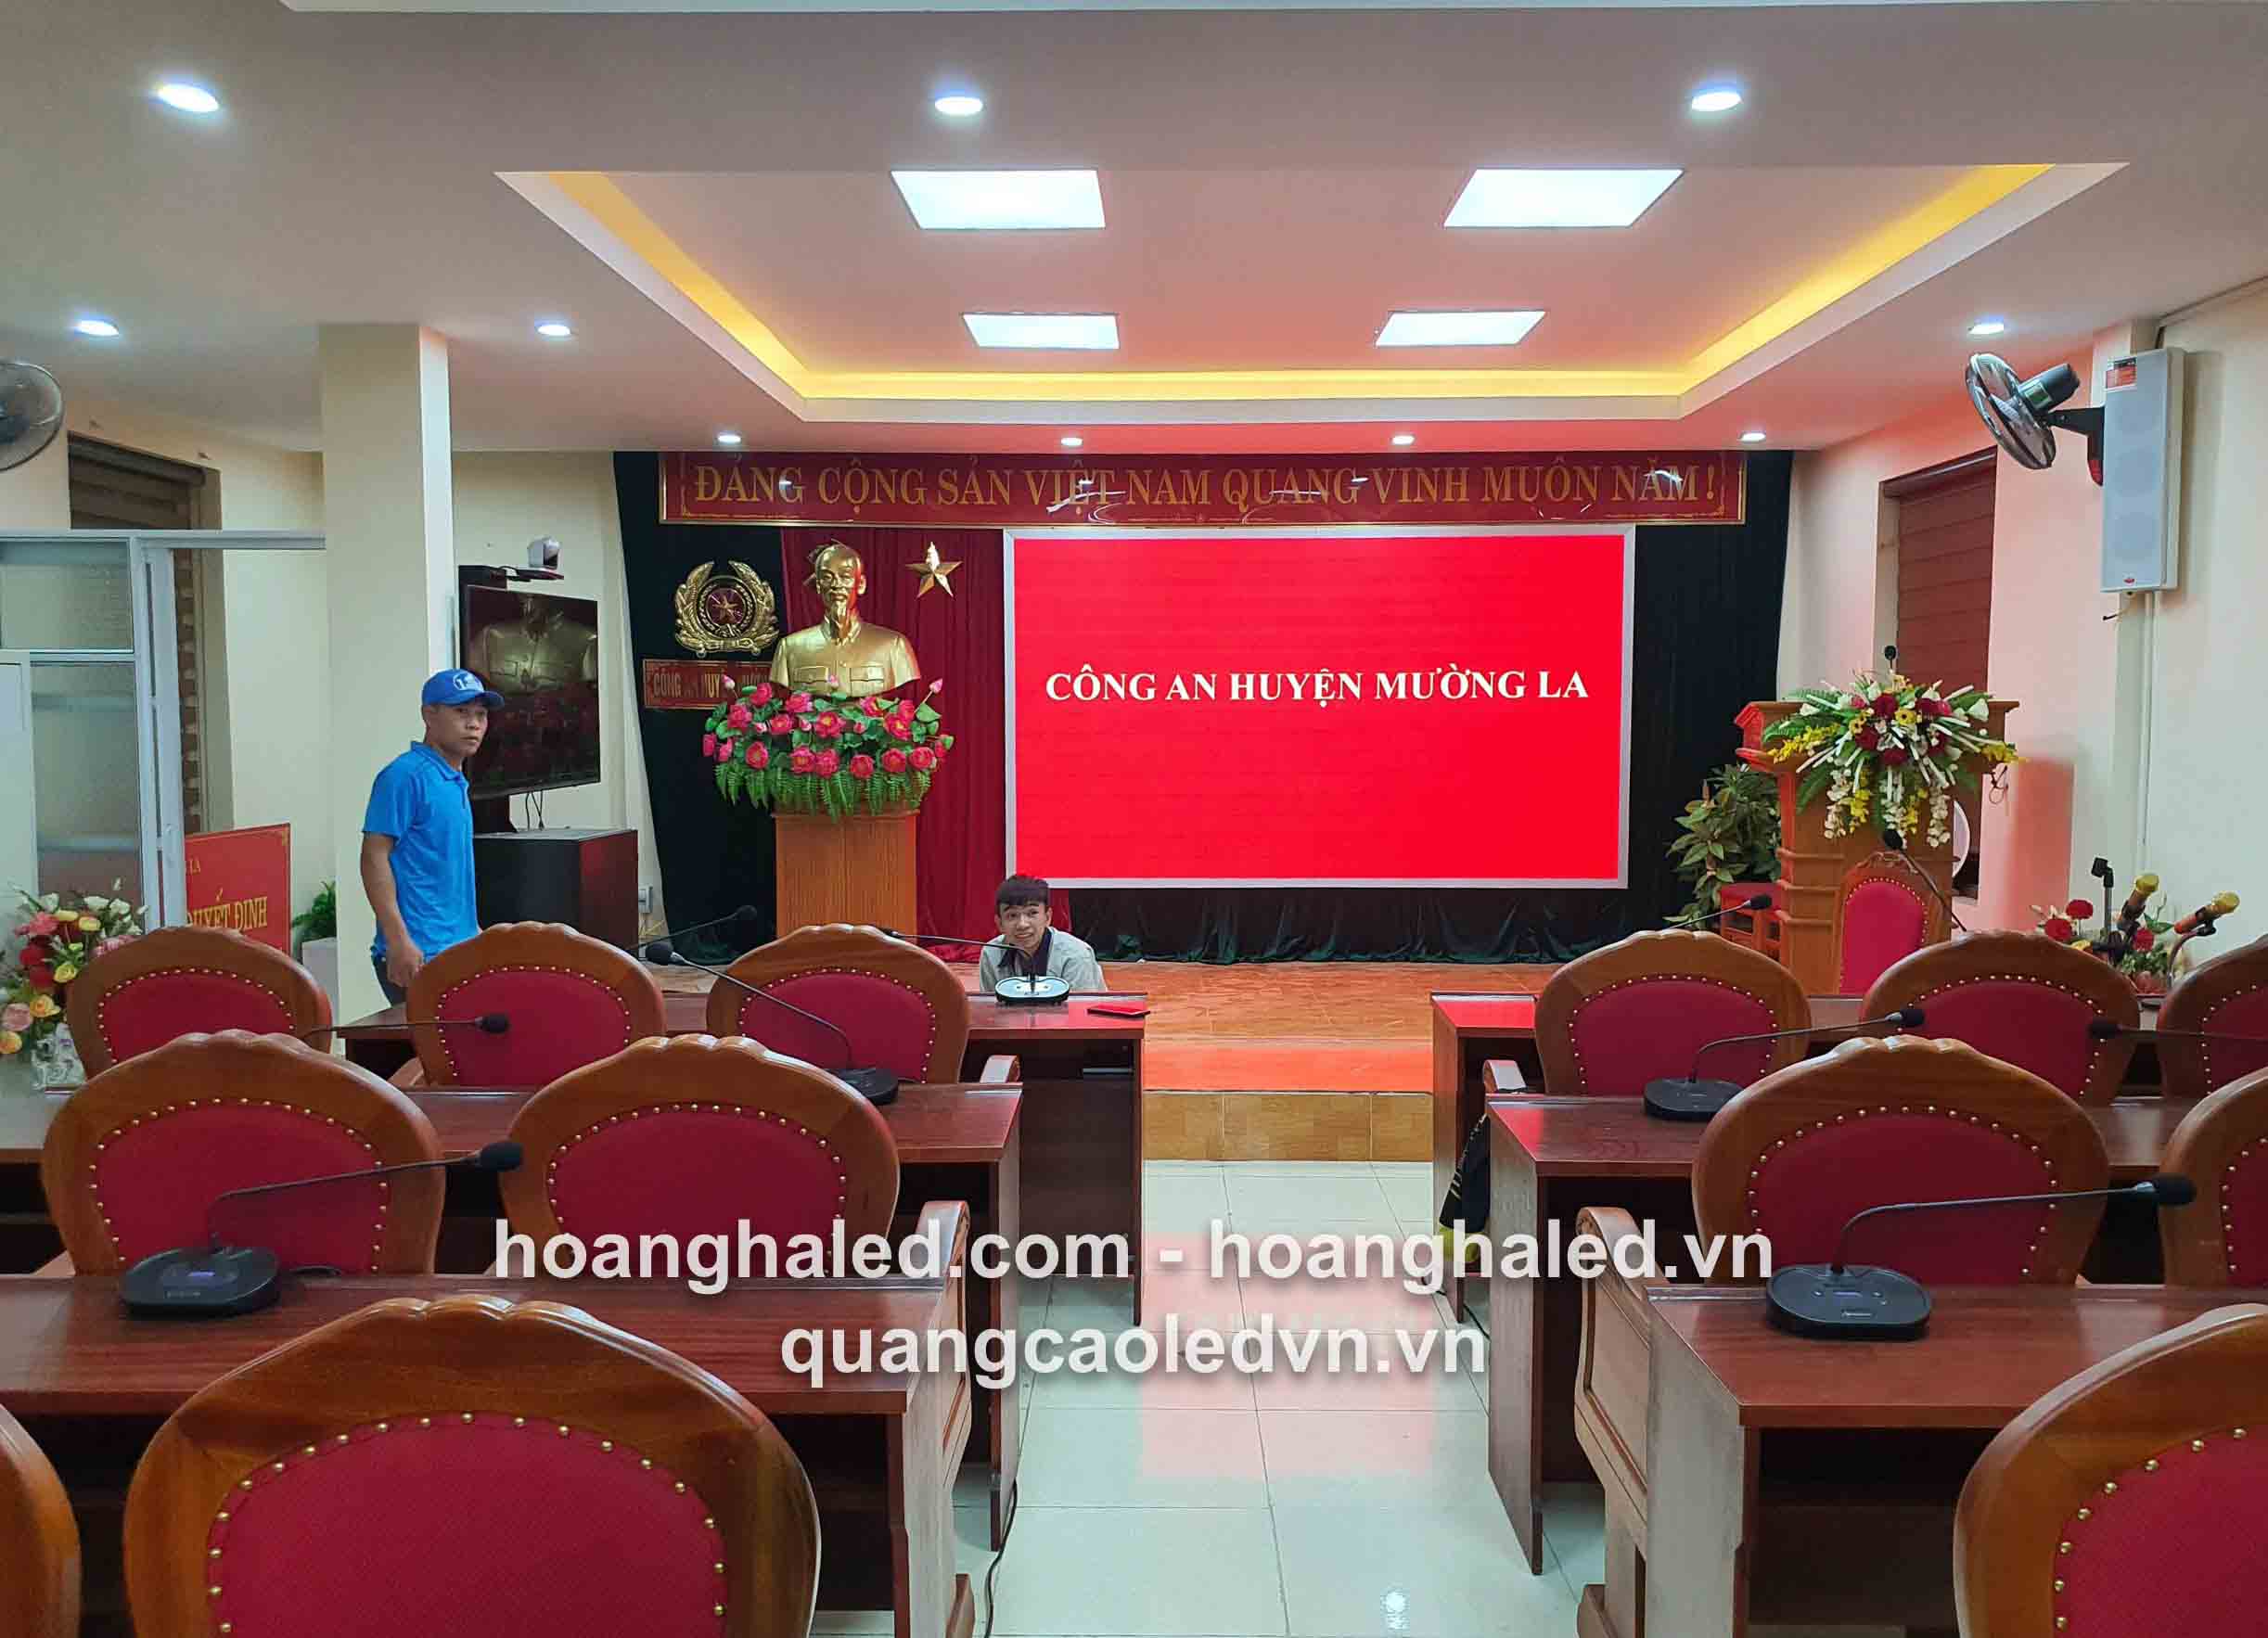 Thi công màn hình LED P3 tại công anh huyện Mường La tỉnh Sơn La 1